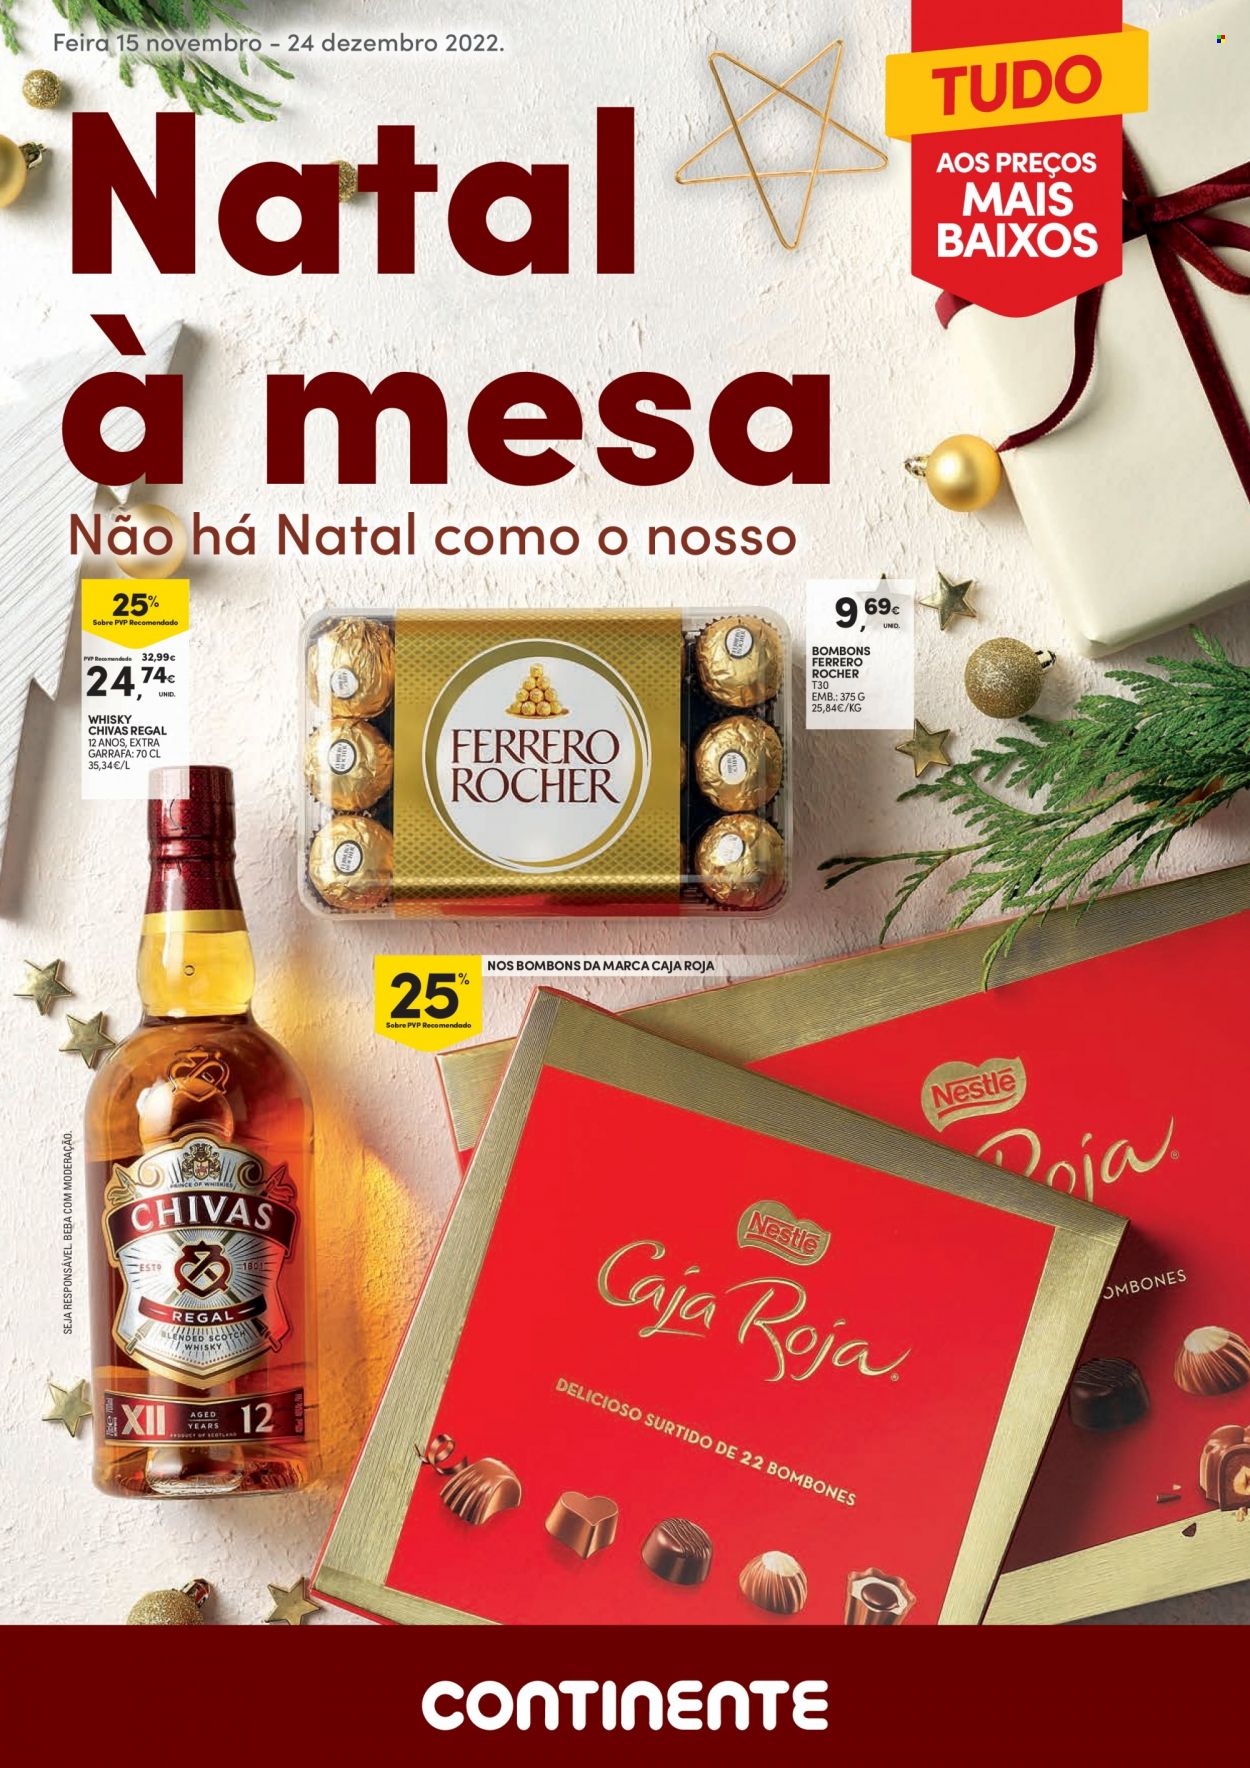 thumbnail - Folheto Continente - 15.11.2022 - 24.12.2022 - Produtos em promoção - Ferrero Rocher, Nestlé, bombom, caramelos, whiskey, Chivas Regal. Página 1.